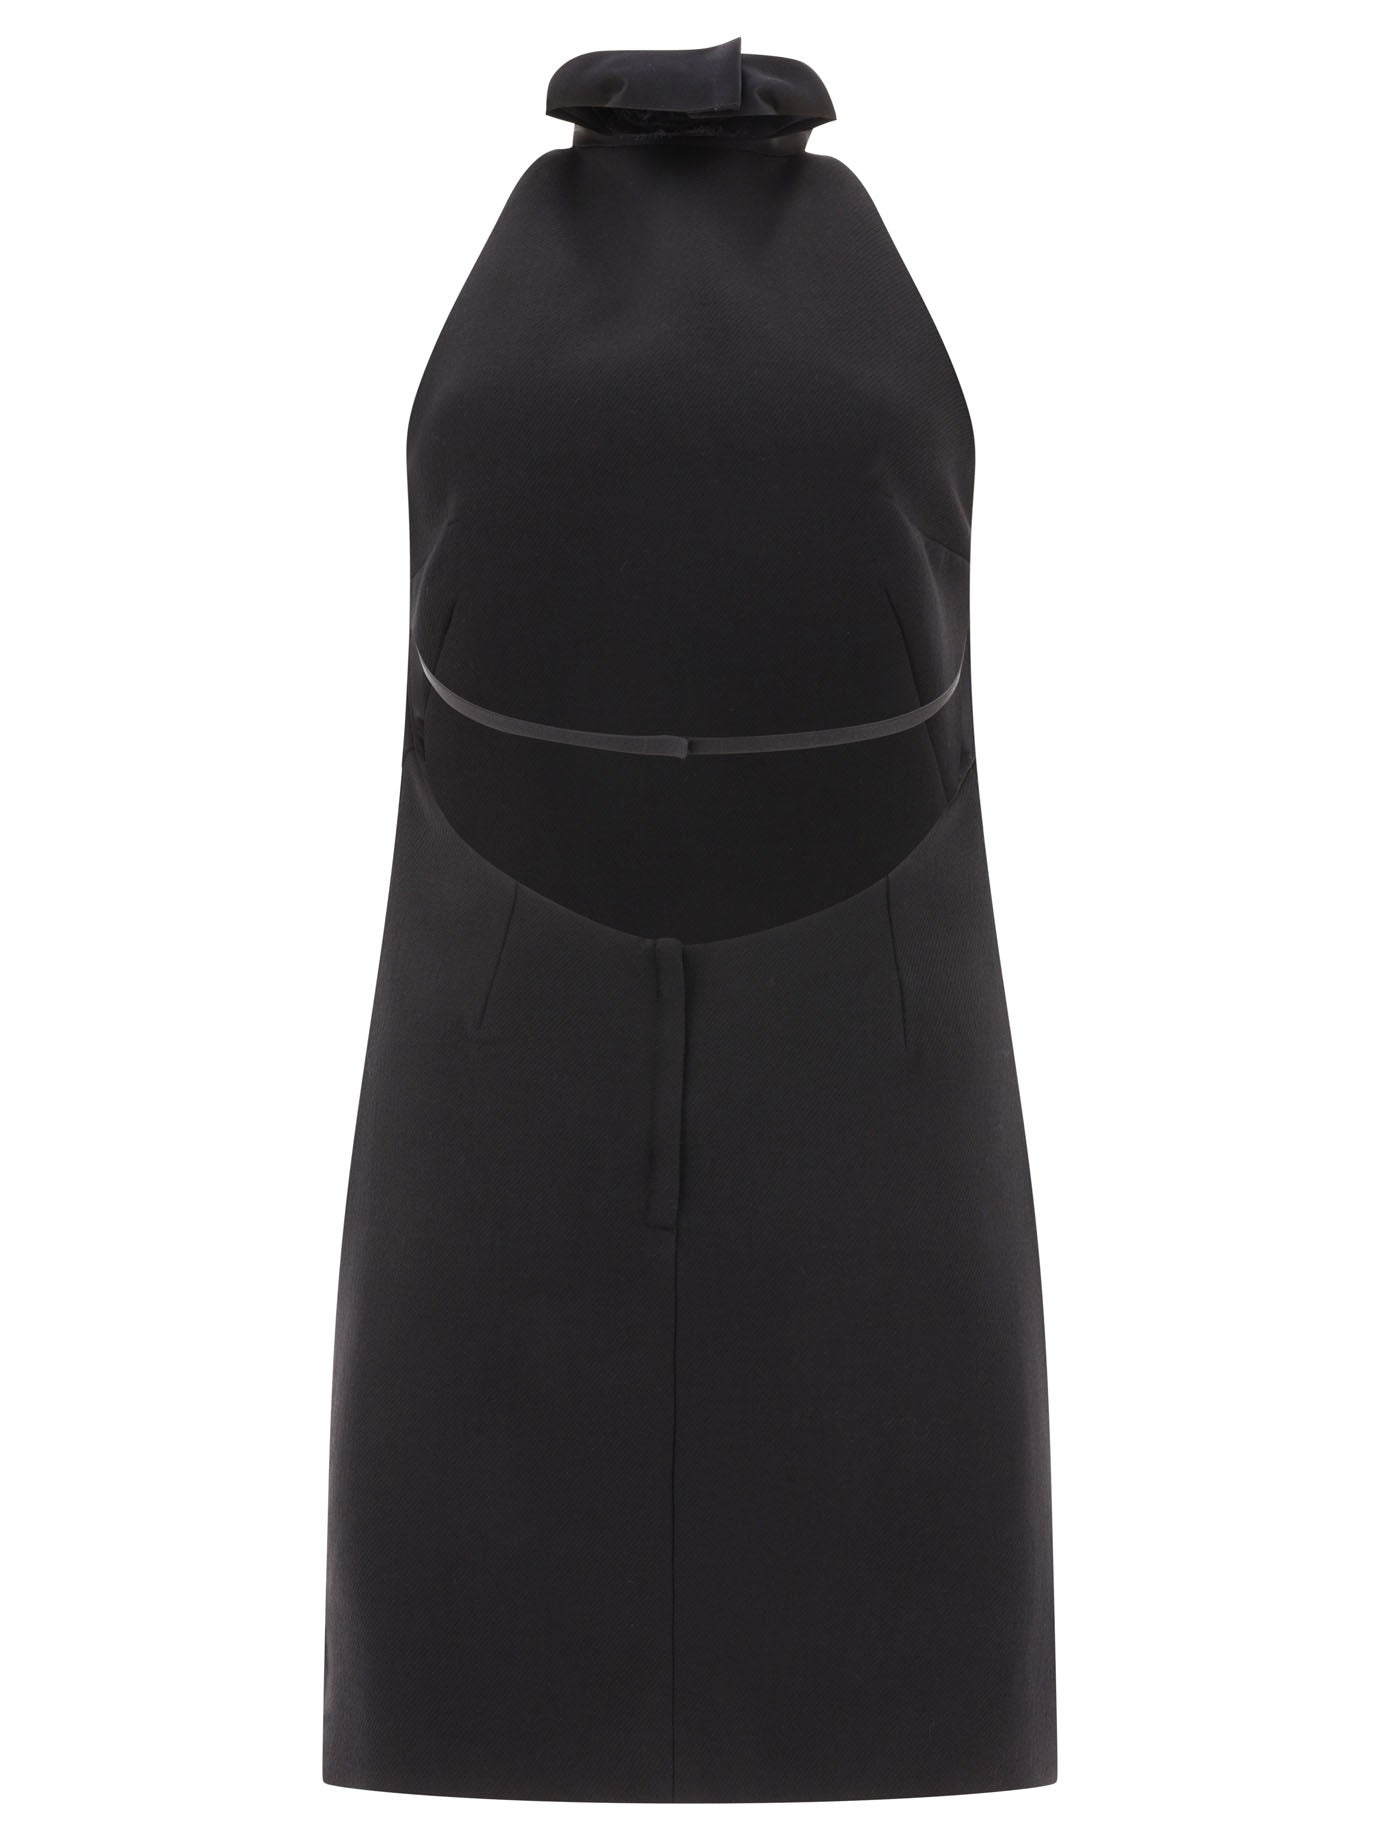 Dolce & Gabbana Short Woolen Dress With Rear Neckline - 2